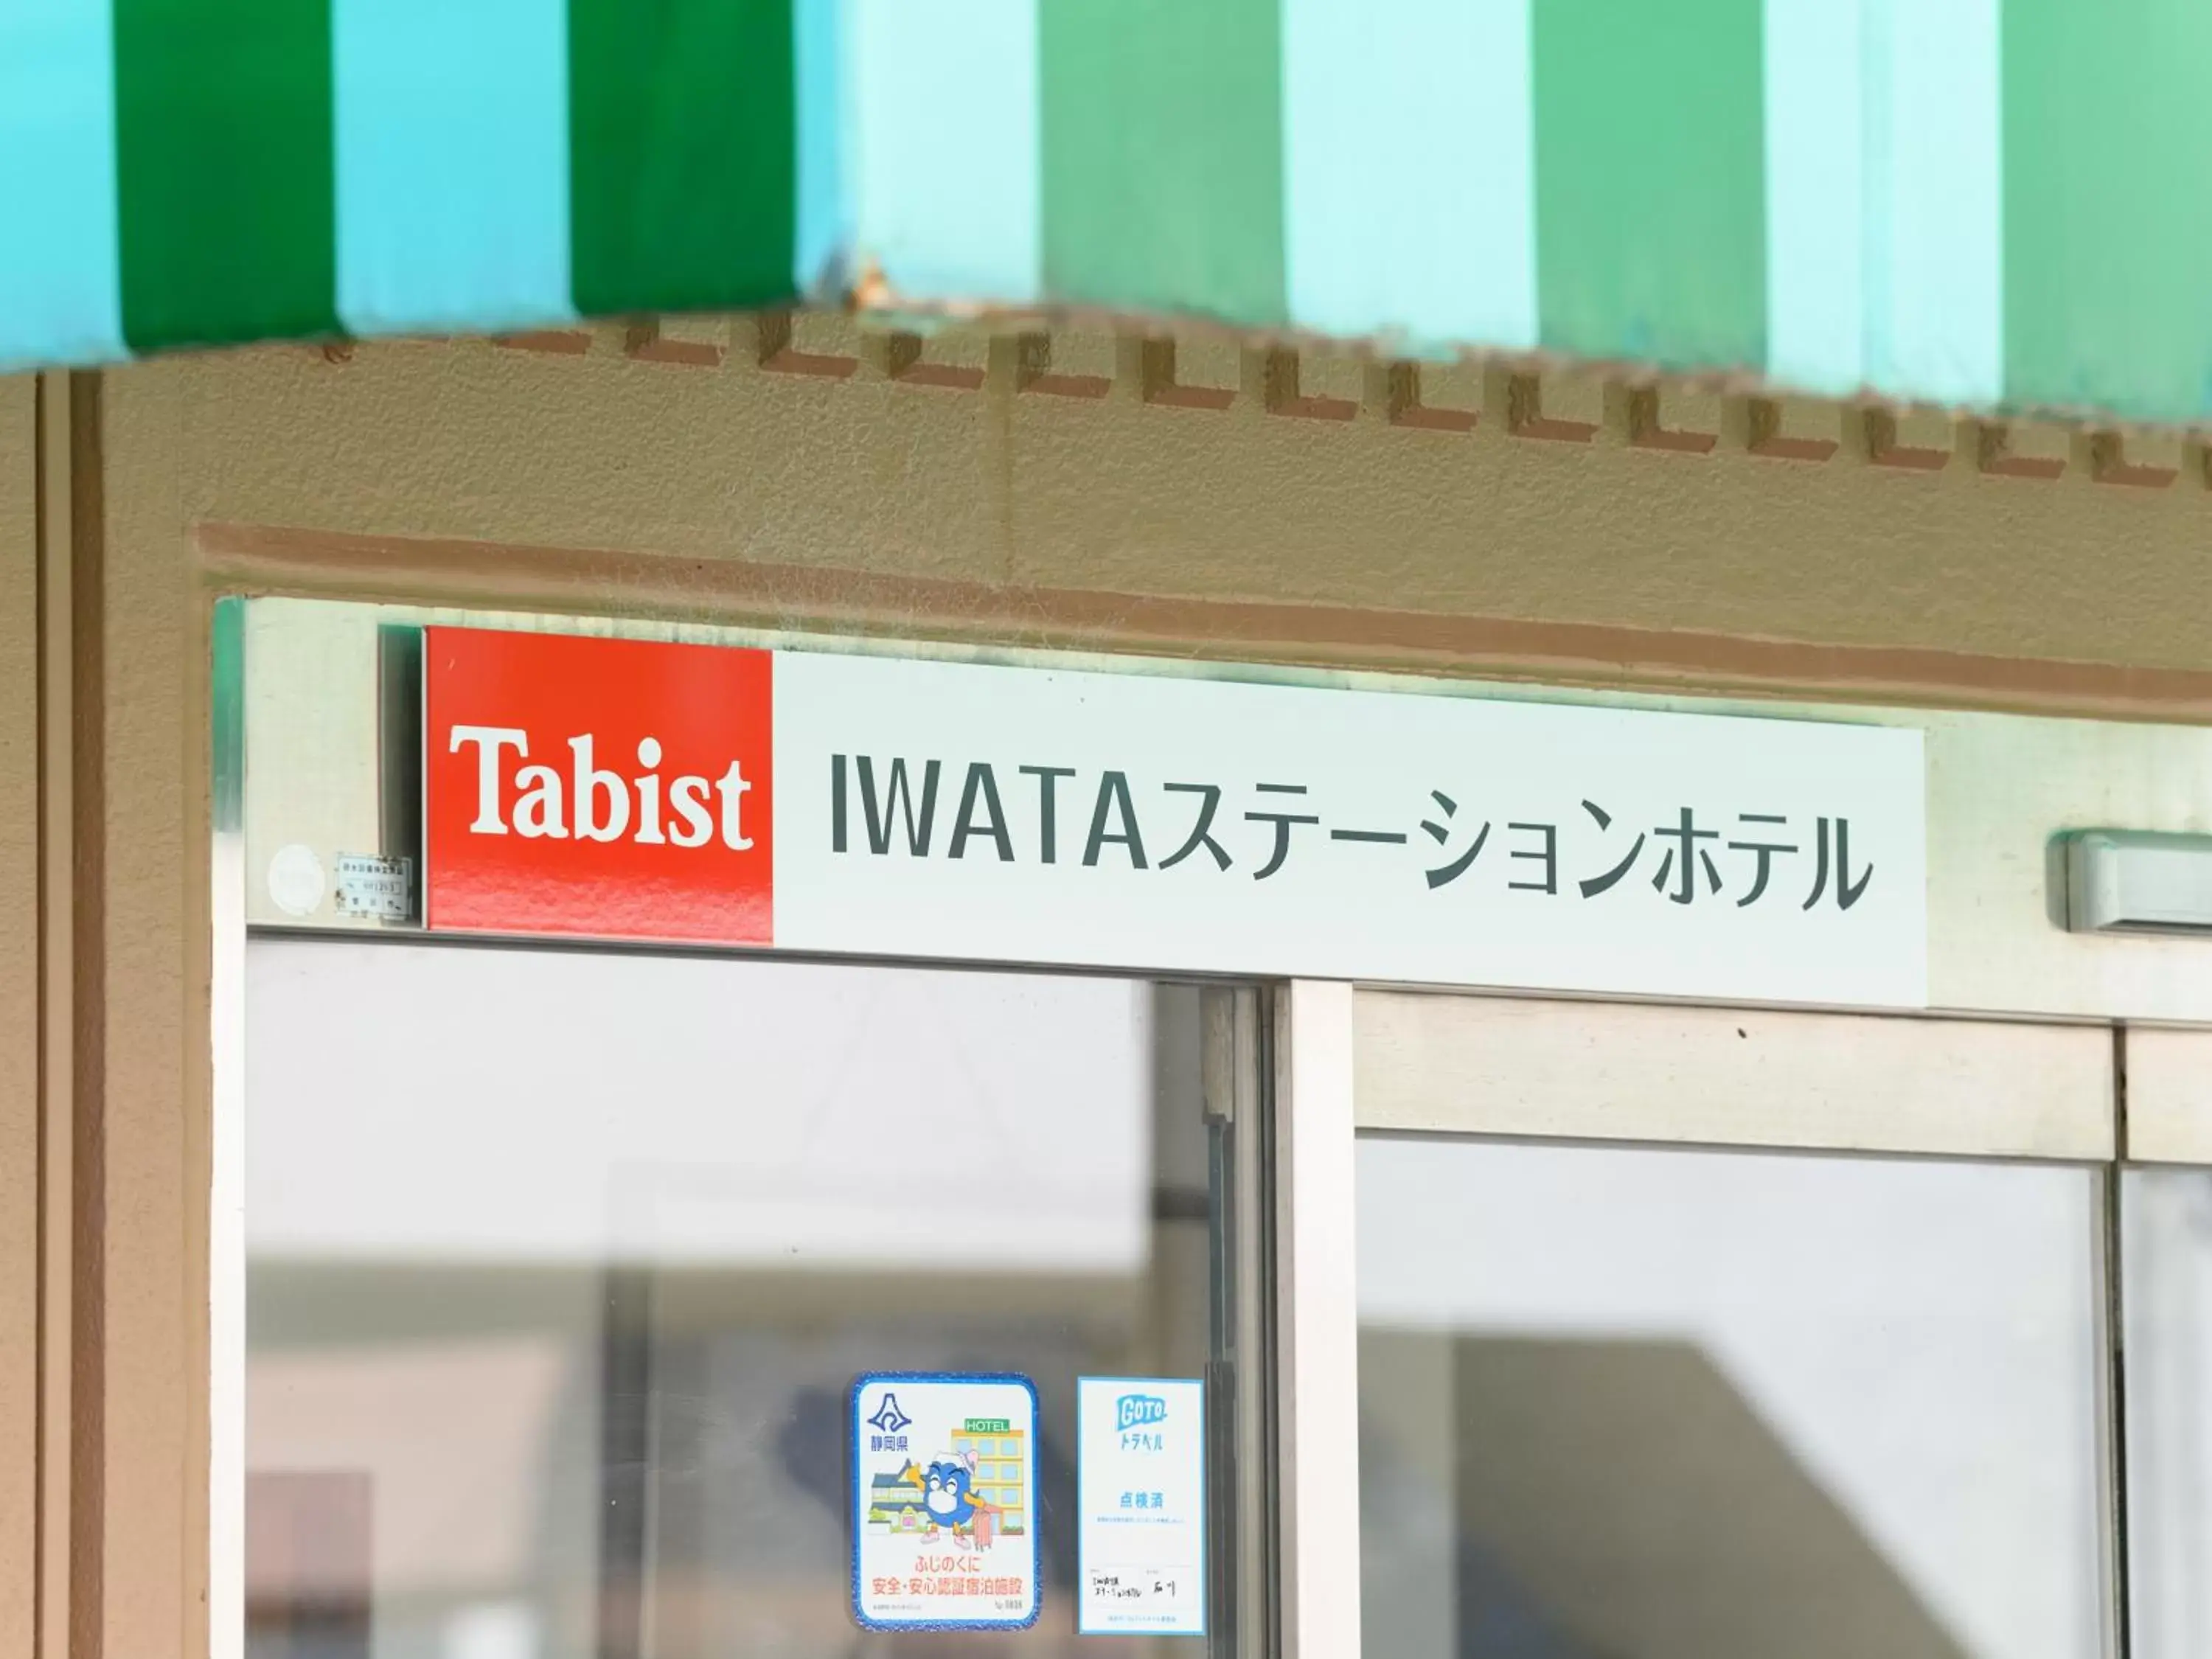 Tabist IWATA Station Hotel